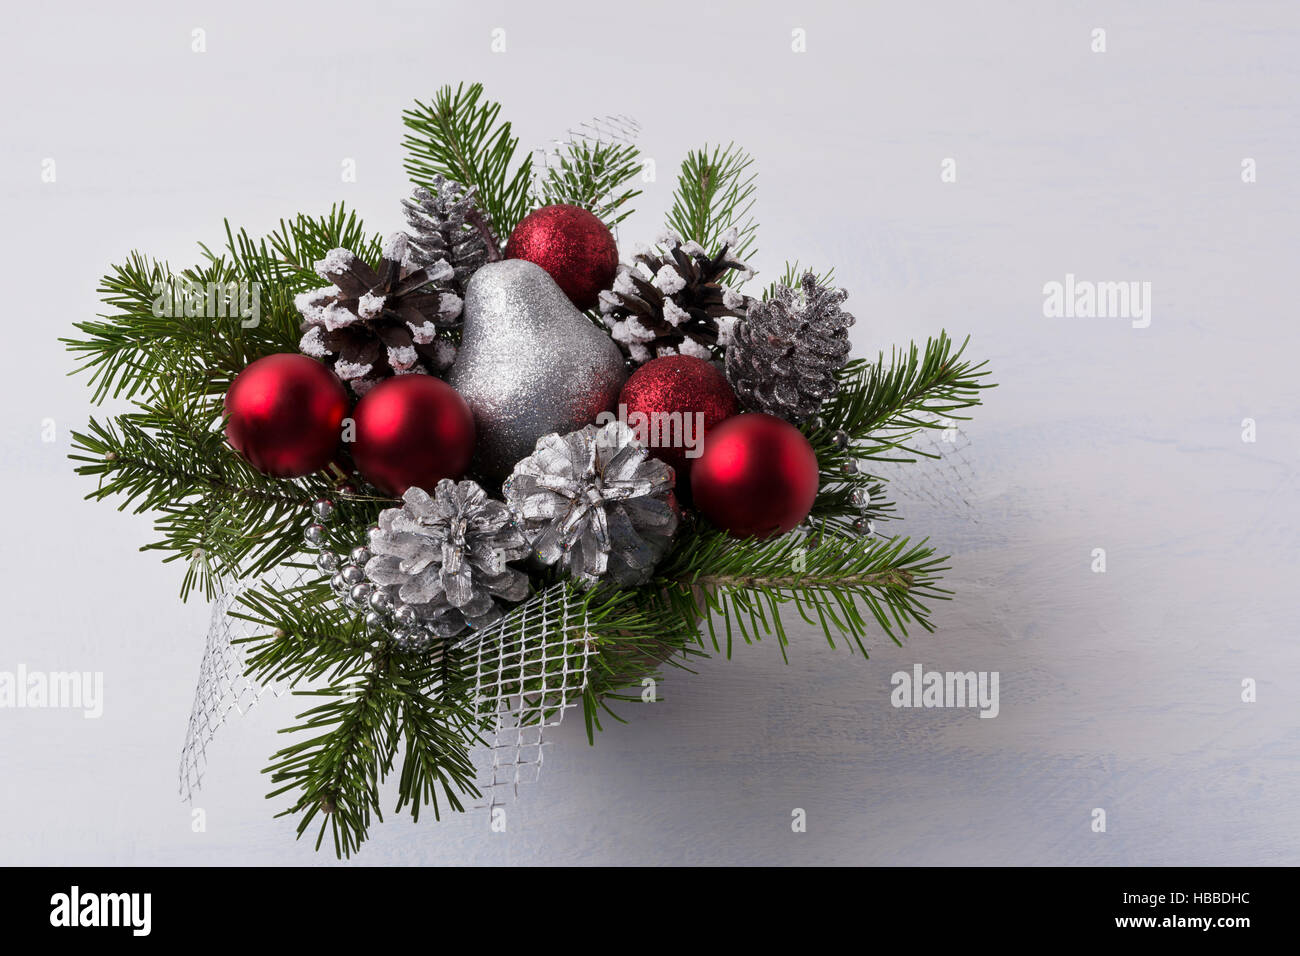 Weihnachts-Dekoration mit rote Glitzer-Schmuck und Silber pürieren.  Weihnachten-Tafelaufsatz mit Tannenzapfen und Silber Birne Stockfotografie  - Alamy